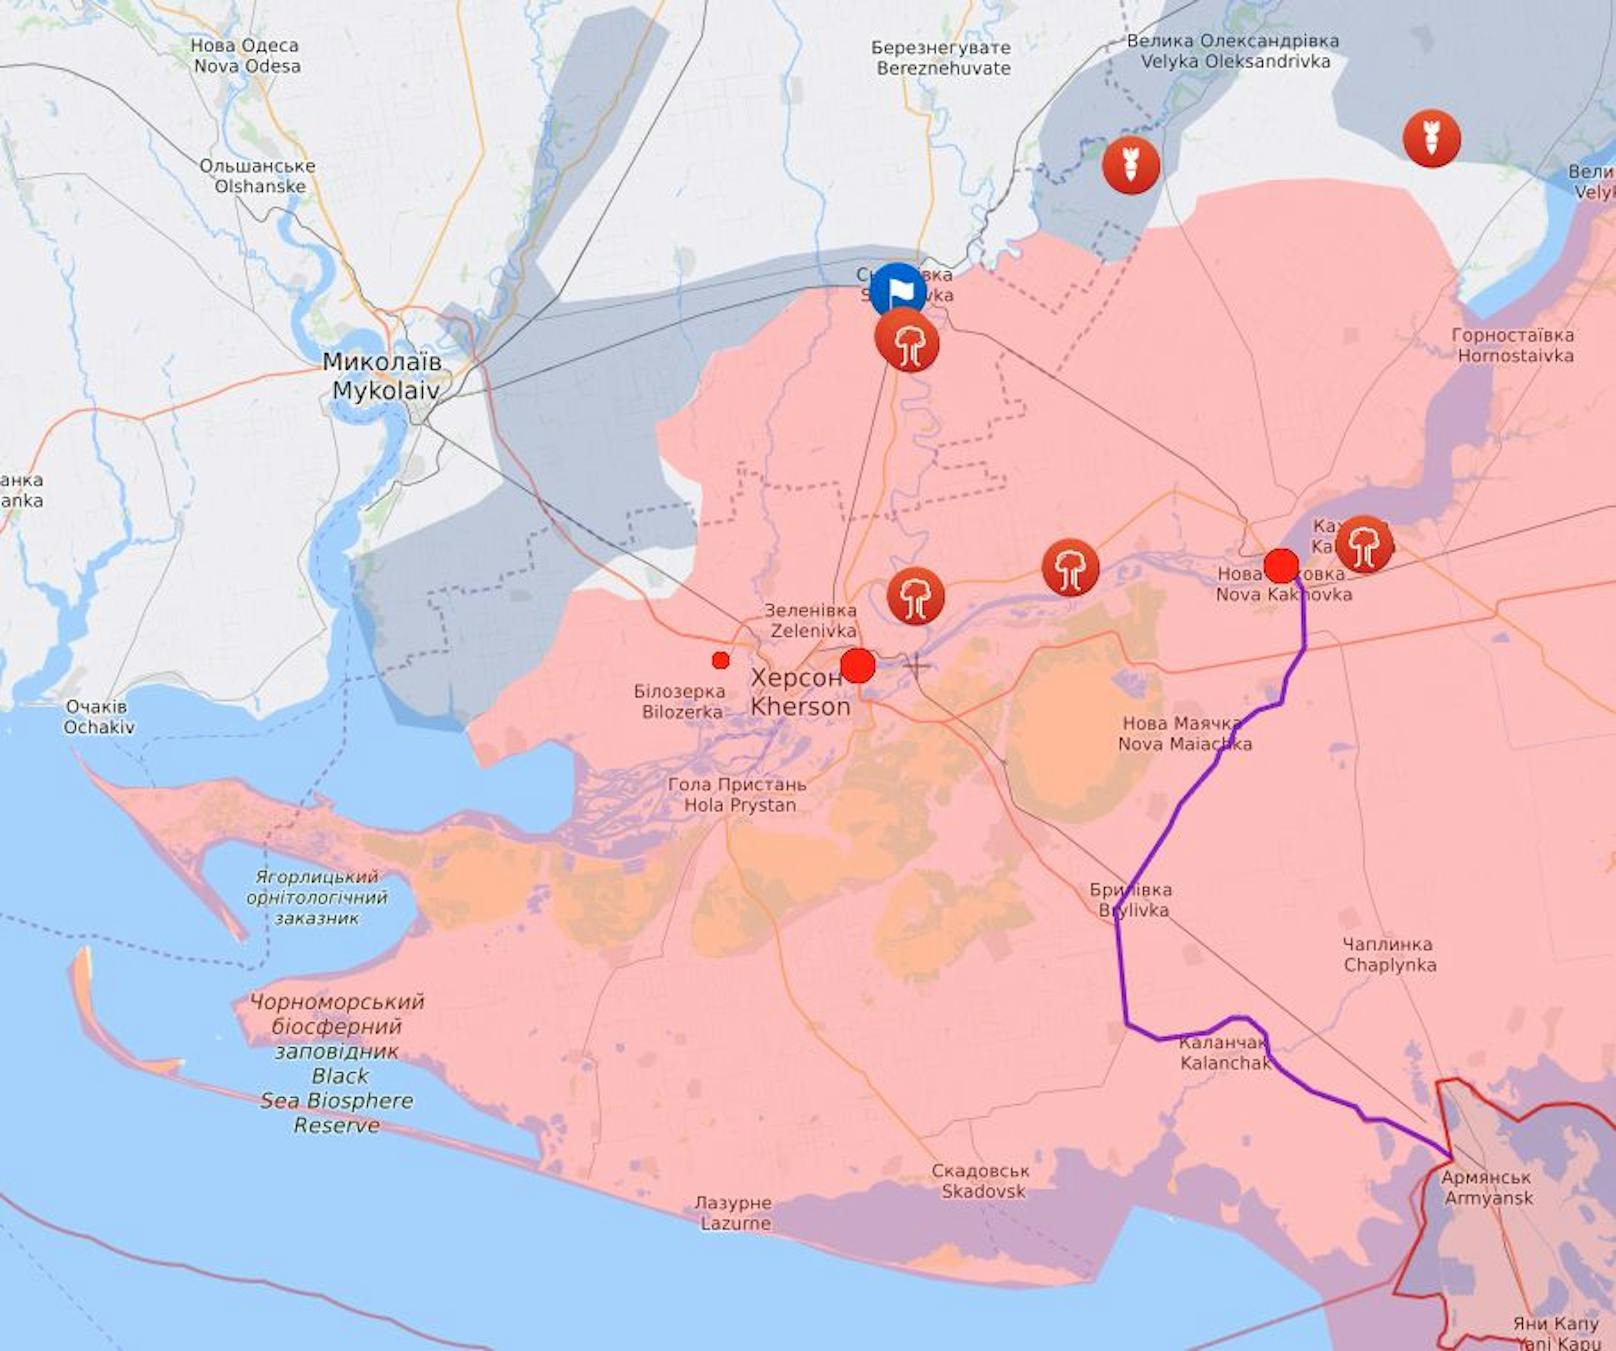 In Rot die bis zu diesem Datum von Russen besetzten, in Blau die durch die Ukraine wieder befreiten Gebiete rund um Cherson.